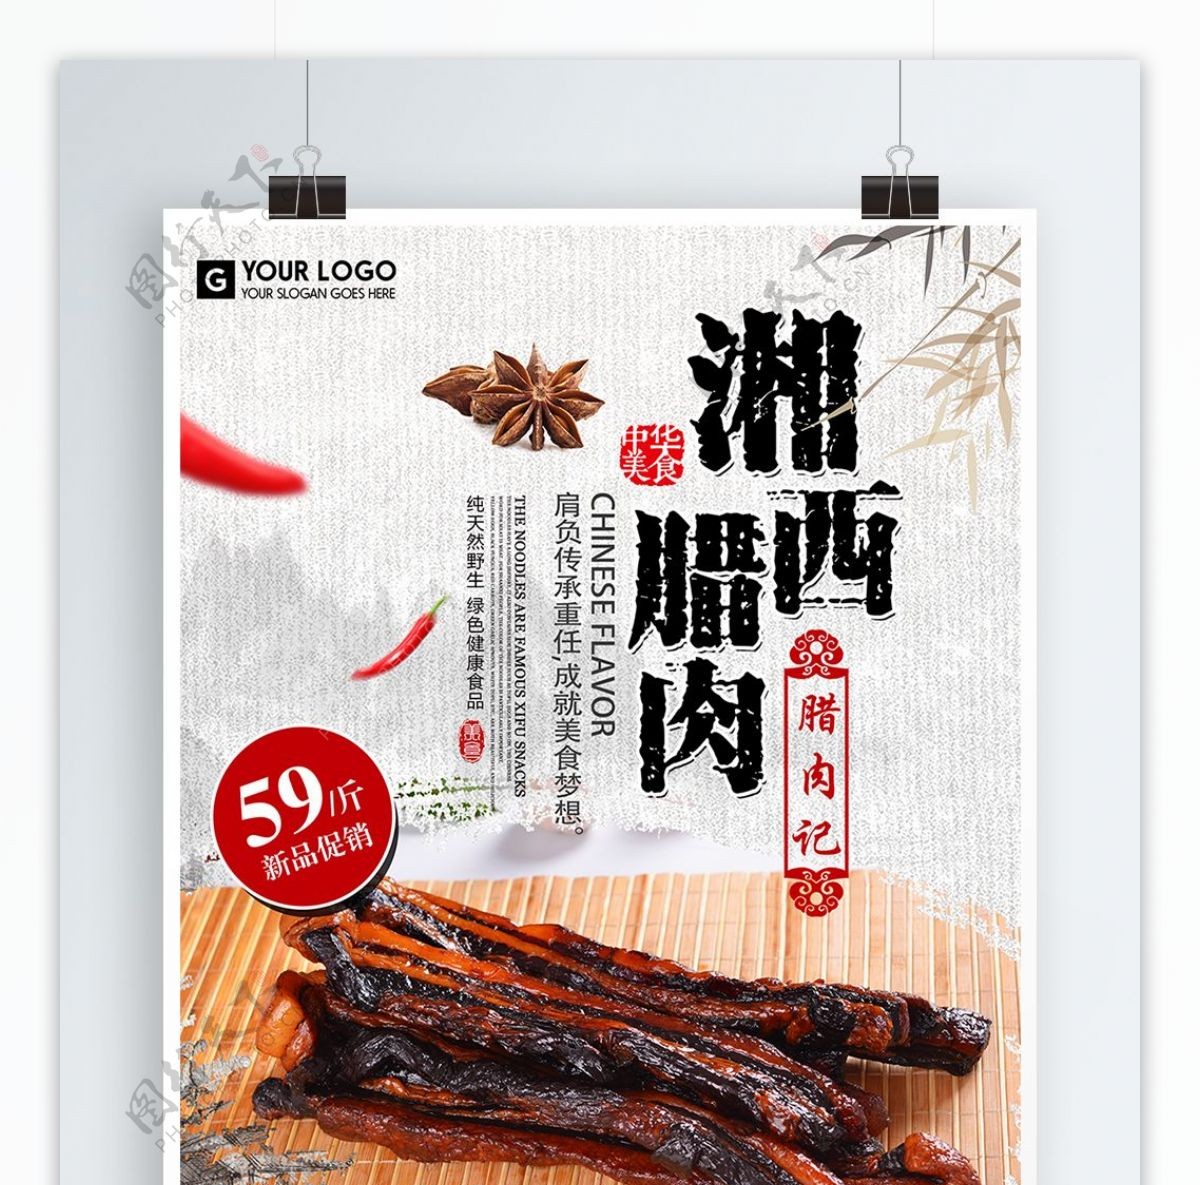 冬季中华美食湖南湘西腊肉促销海报